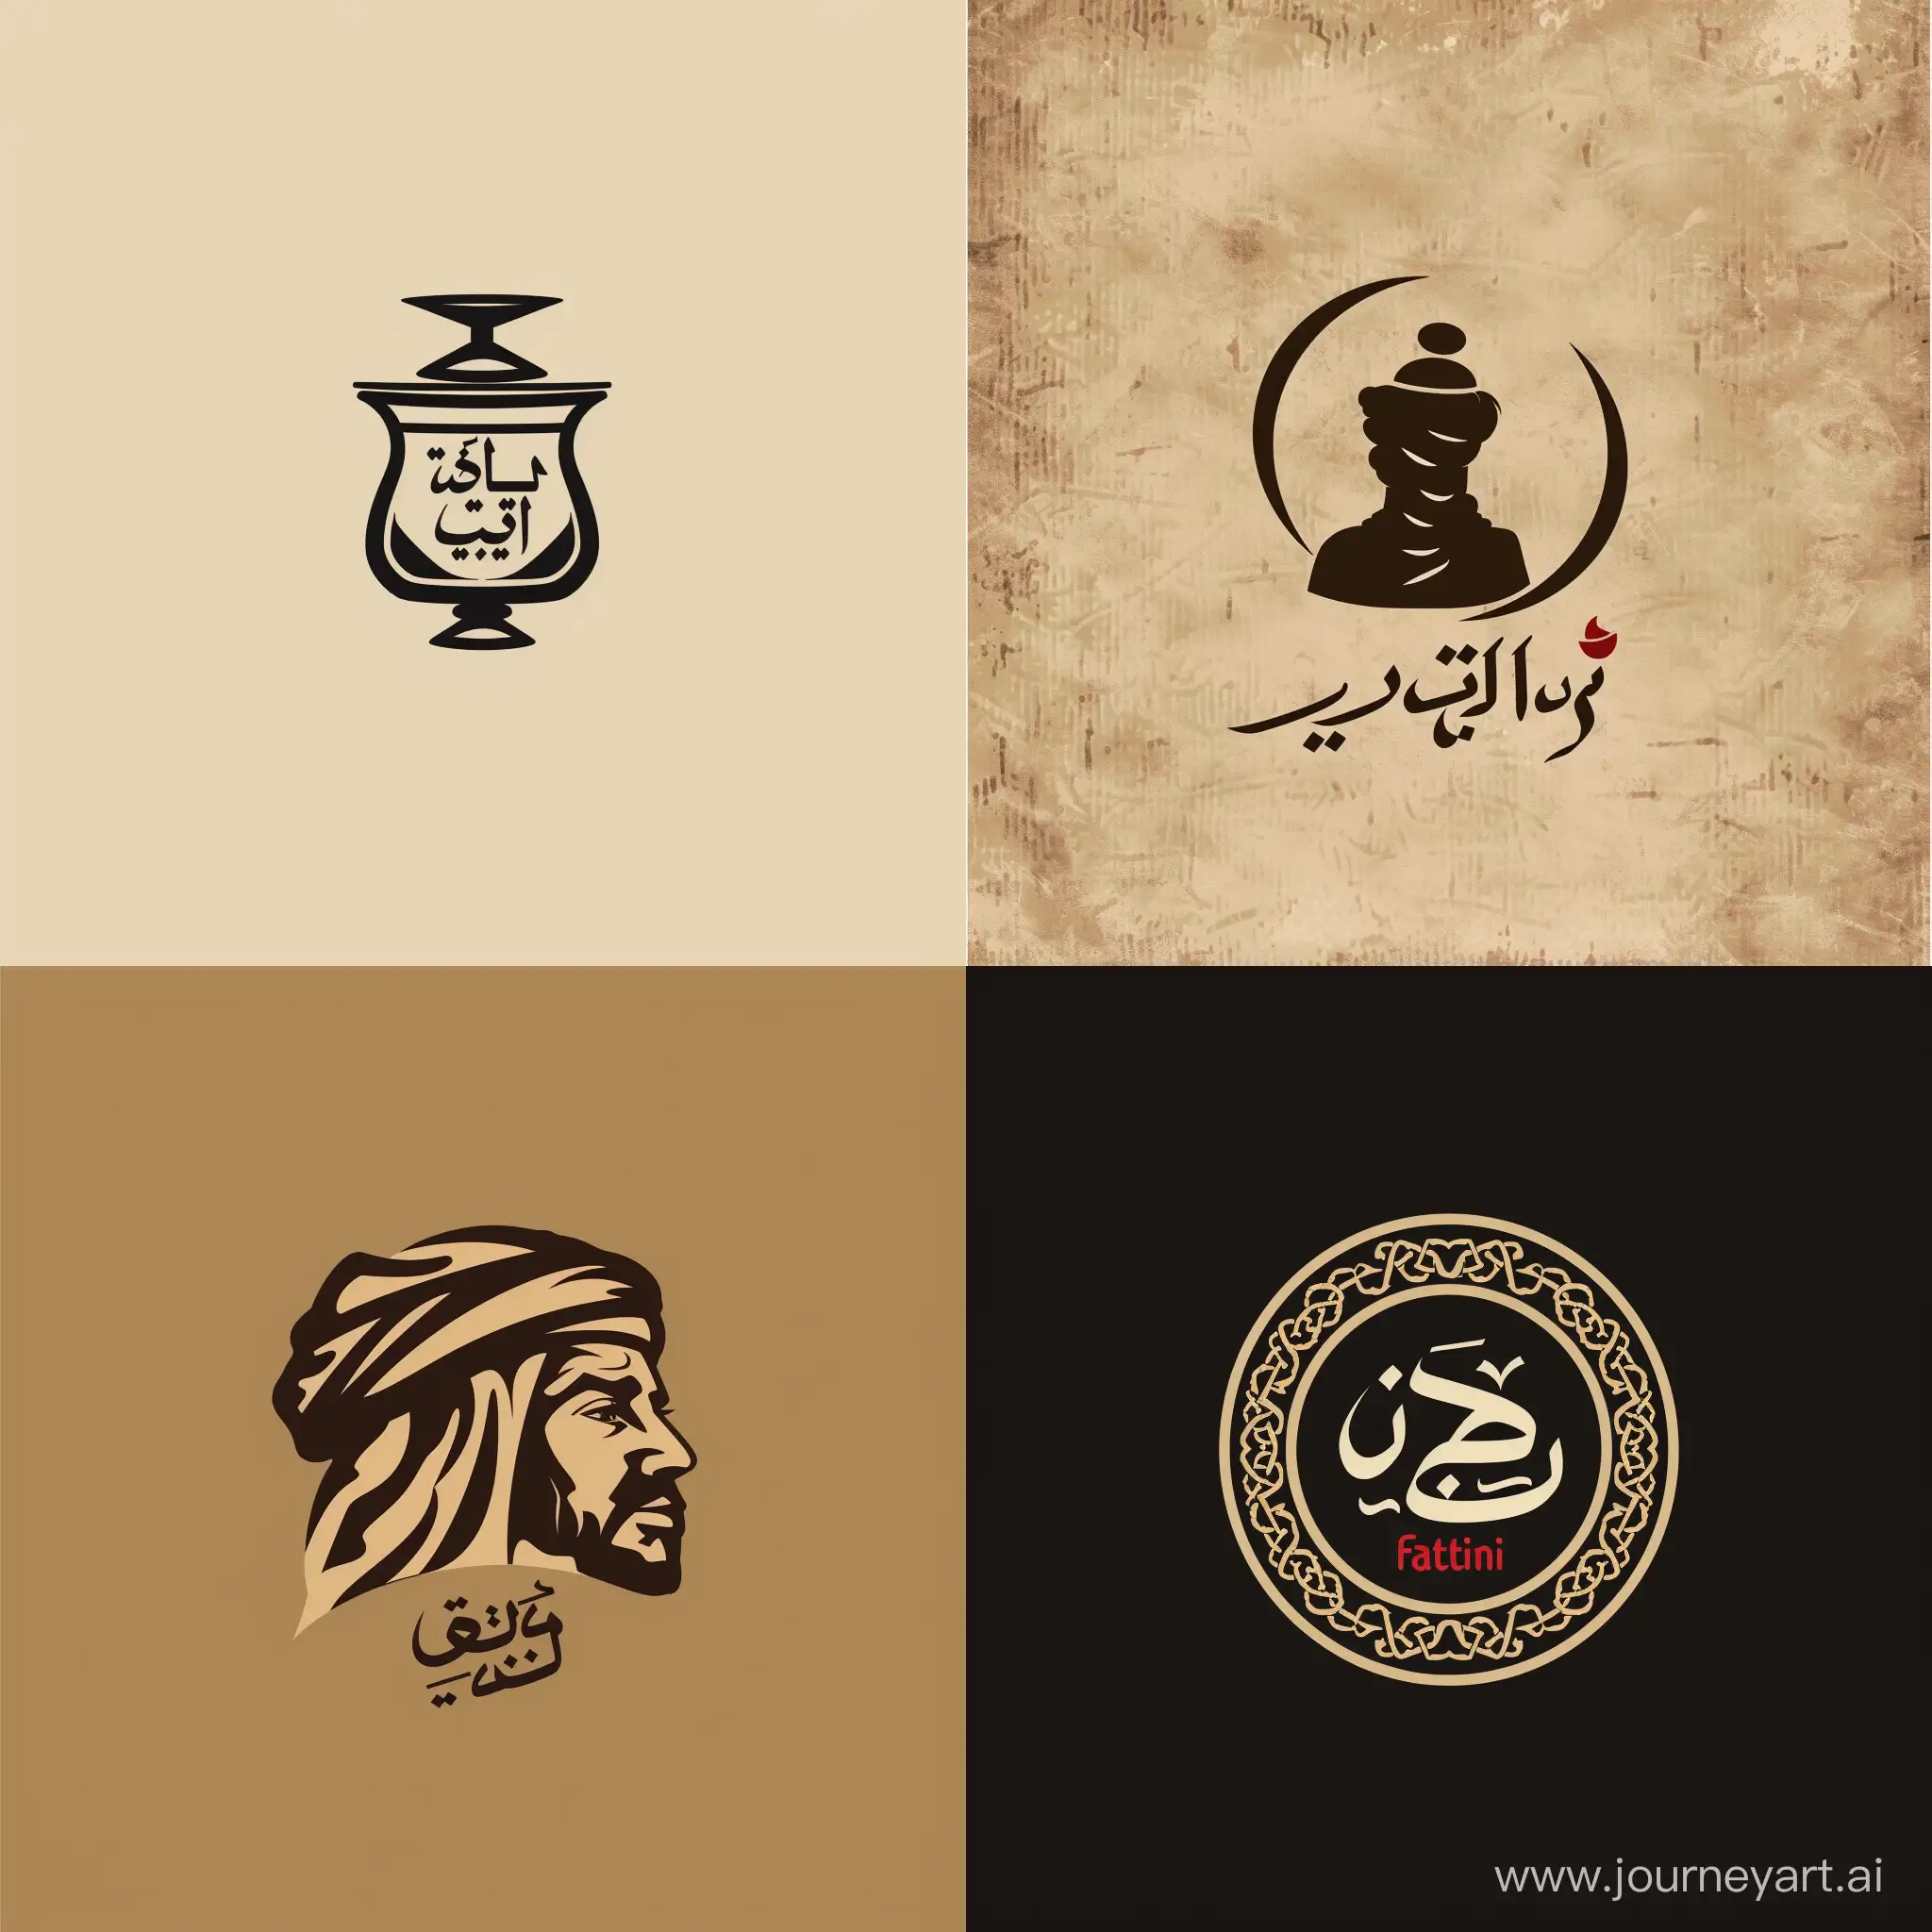 صمم لي لوقو يظهر الثقافة اليمنية واكتب ( مطعم العم فتيني )